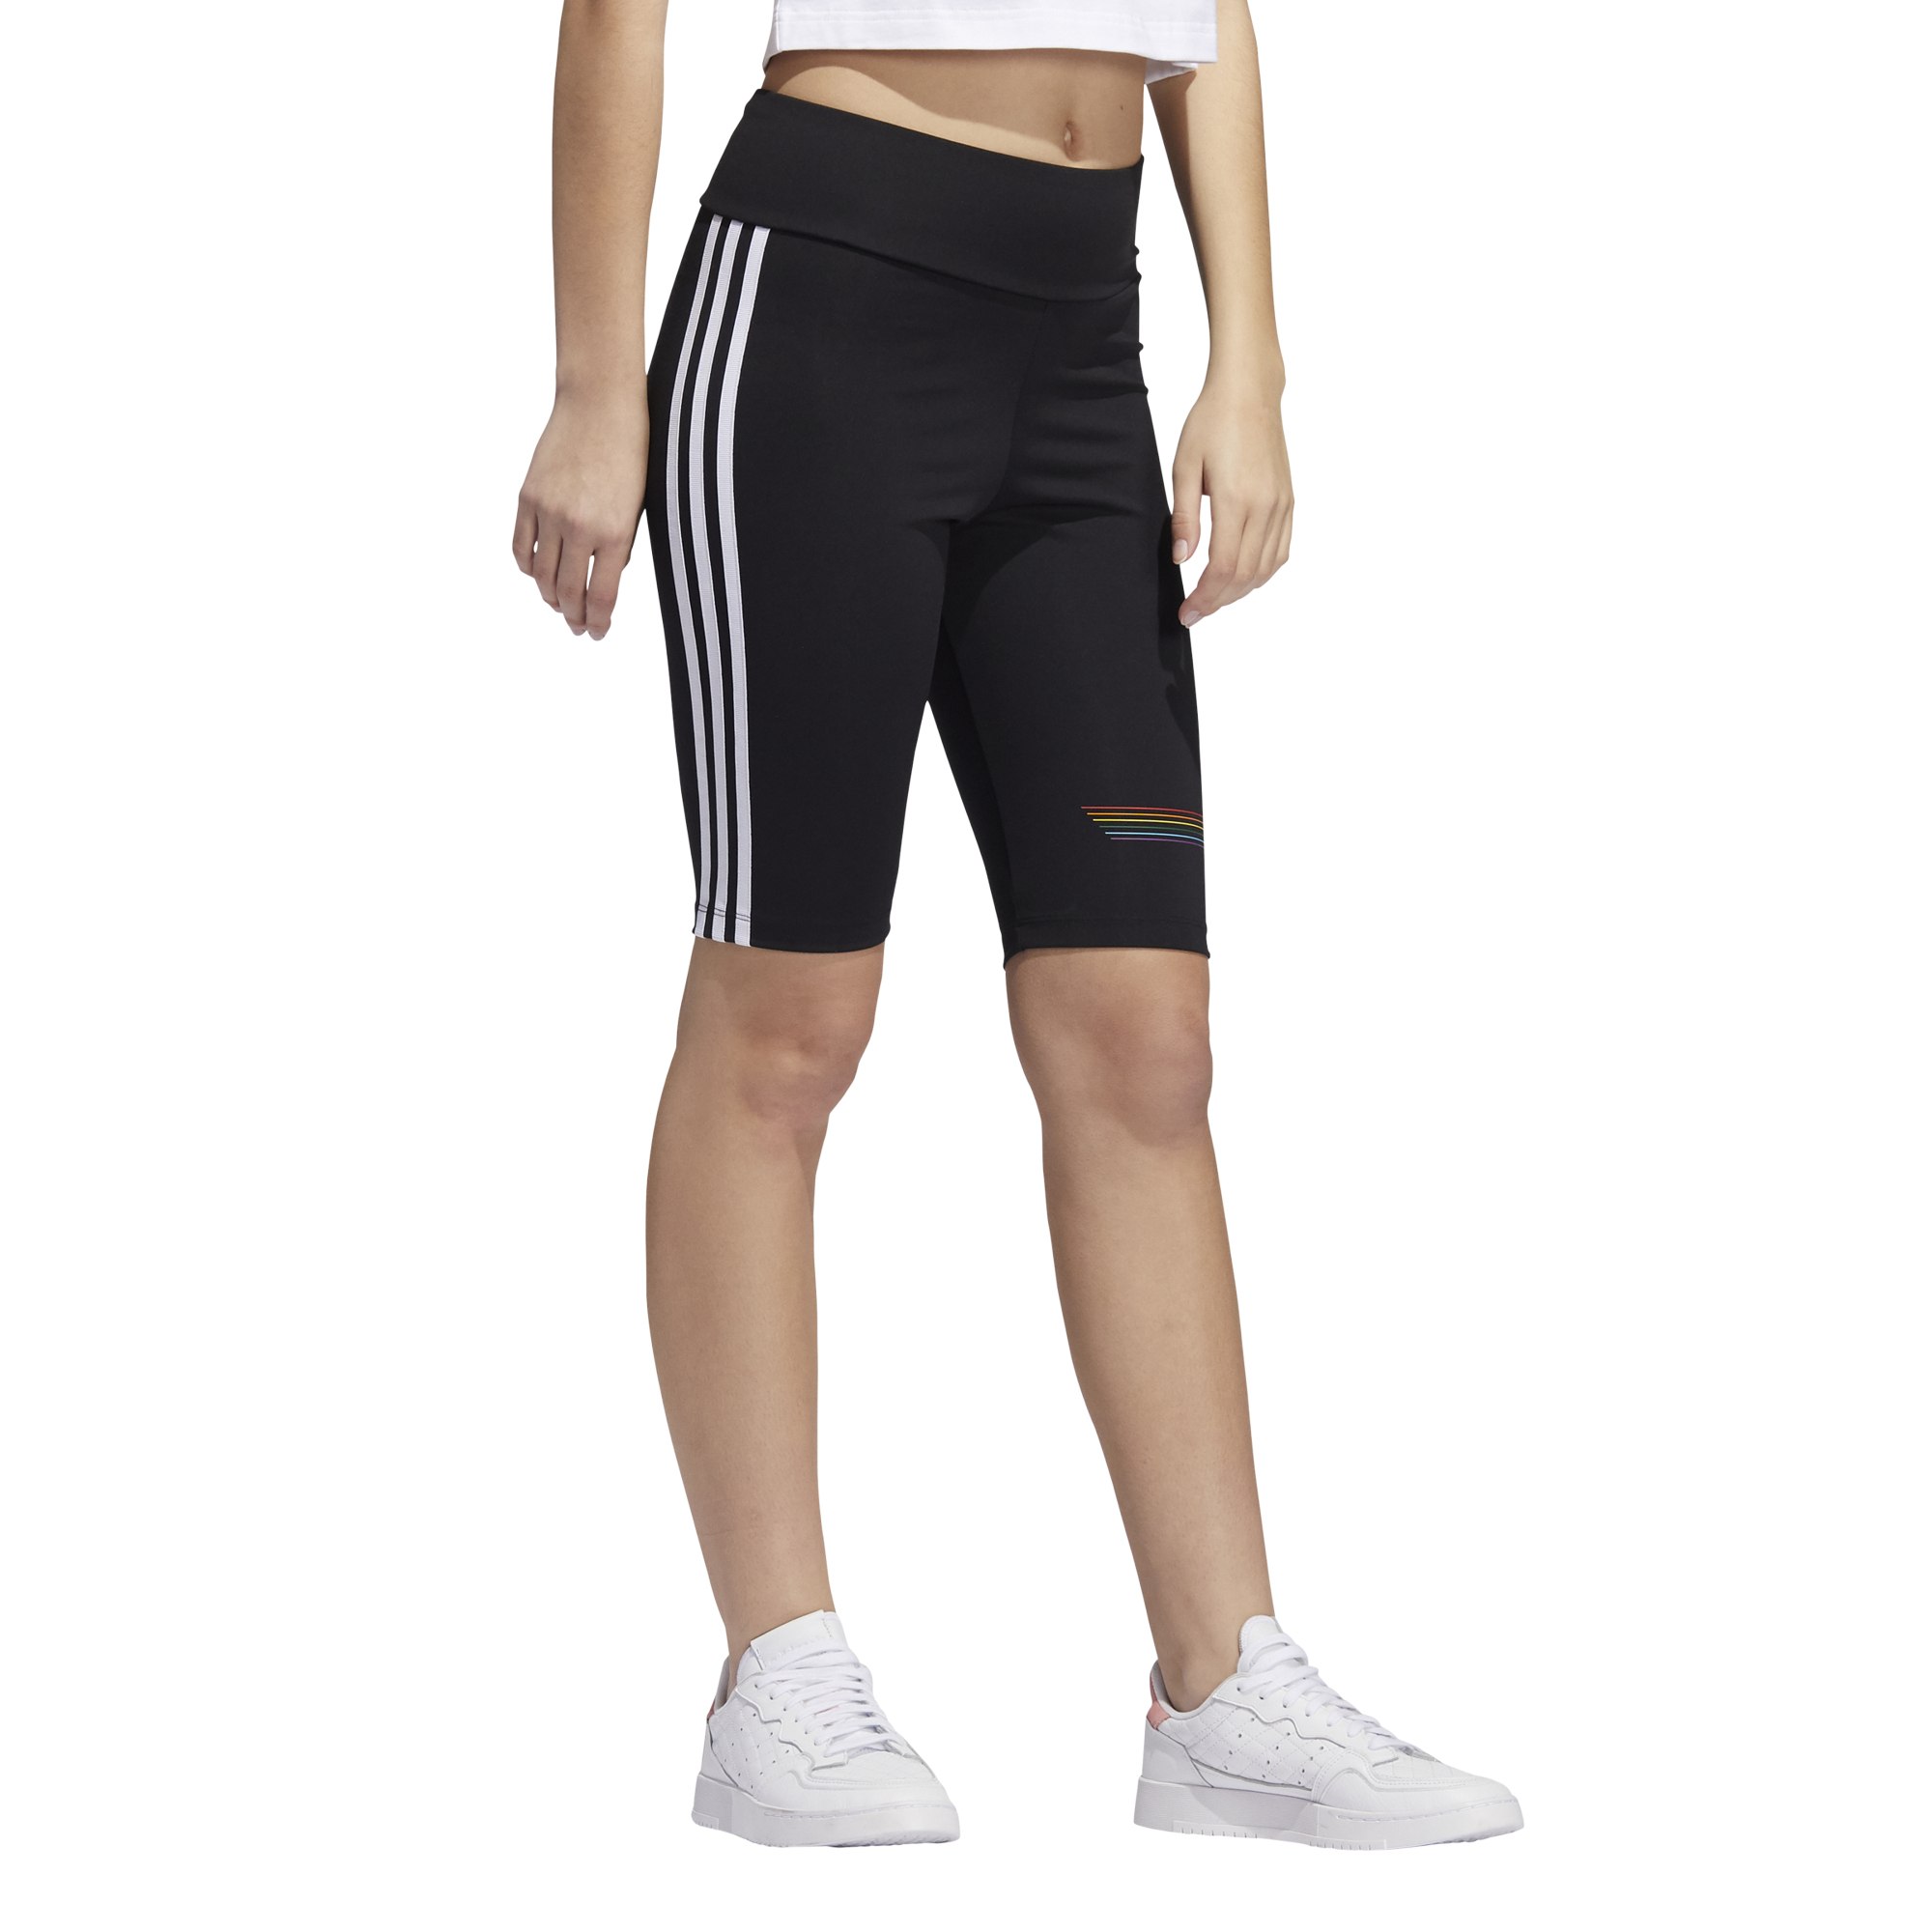 adidas originals women's cycle shorts